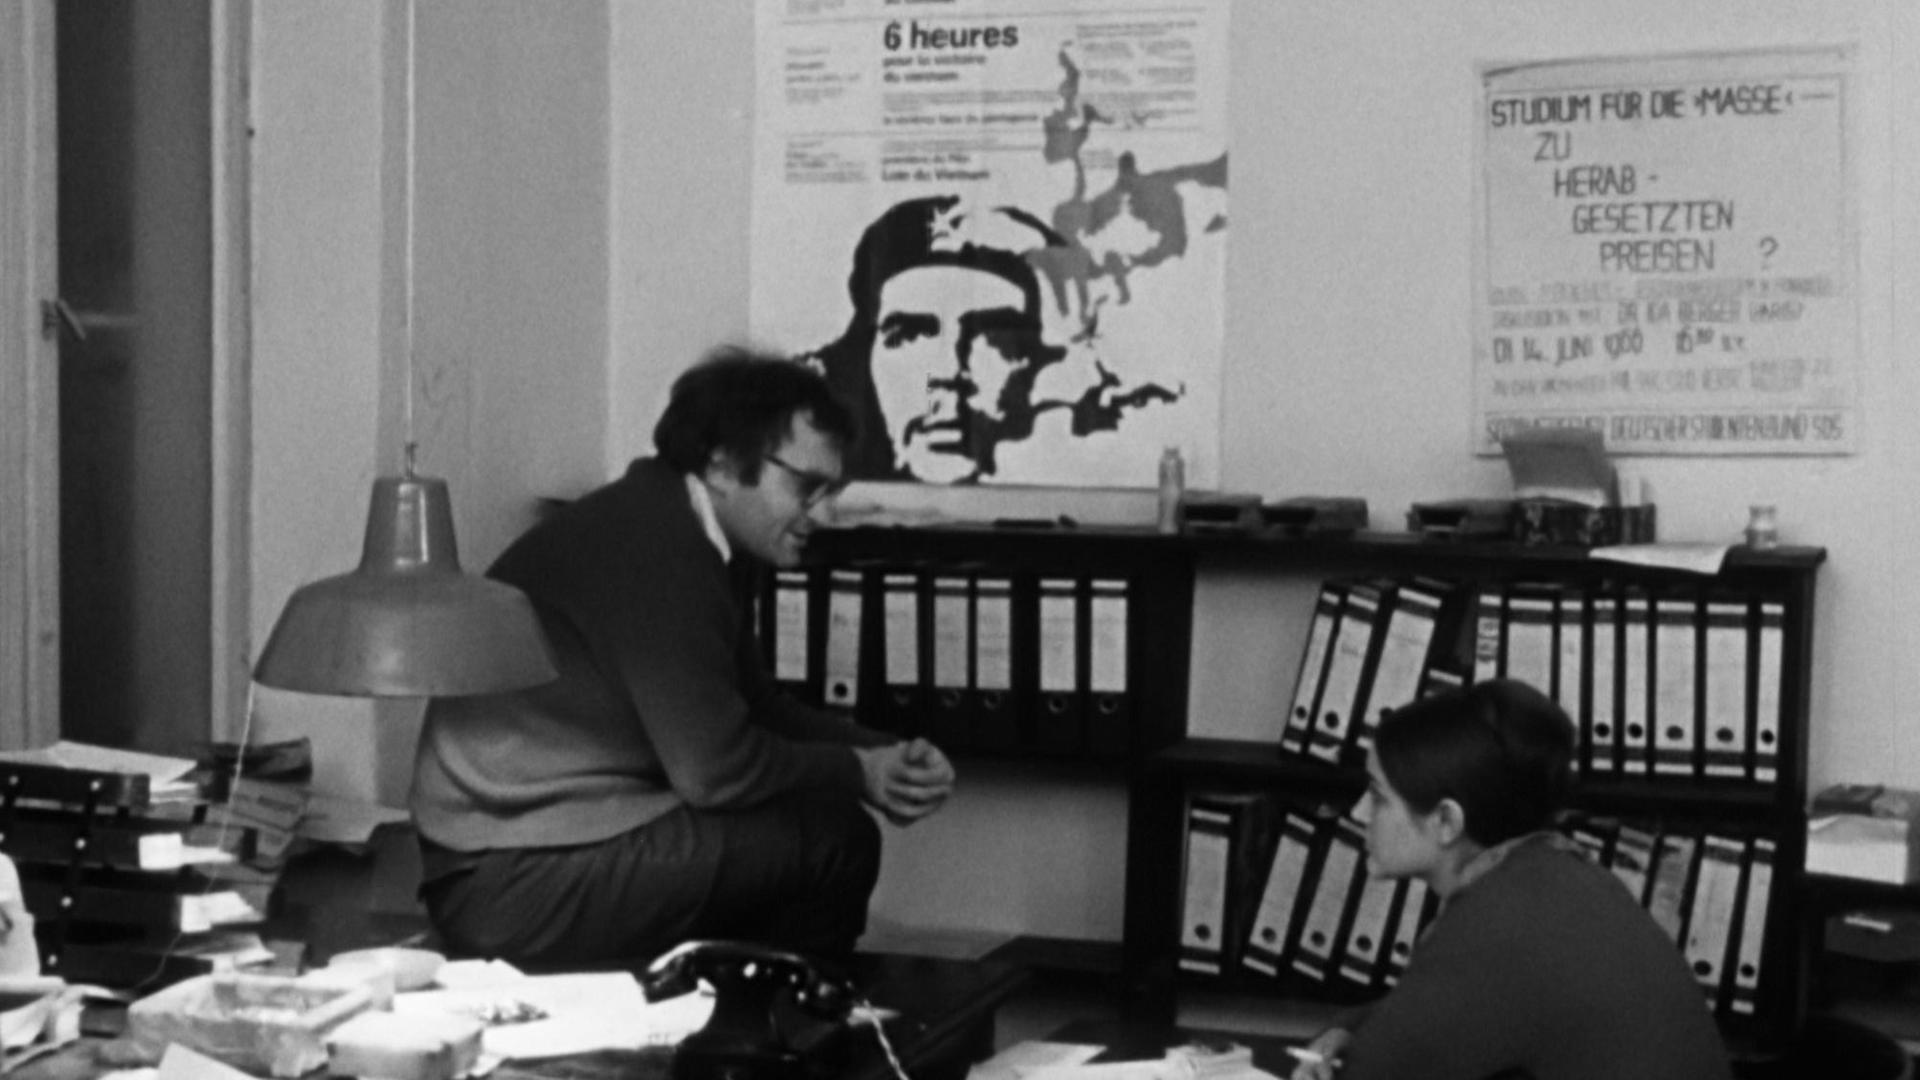 Filmstill aus "Ein Western für den SDS" - Christian Semler und Elke Edelmann in einem Büro, an der Wand hängt ein Poster von Che Guevara